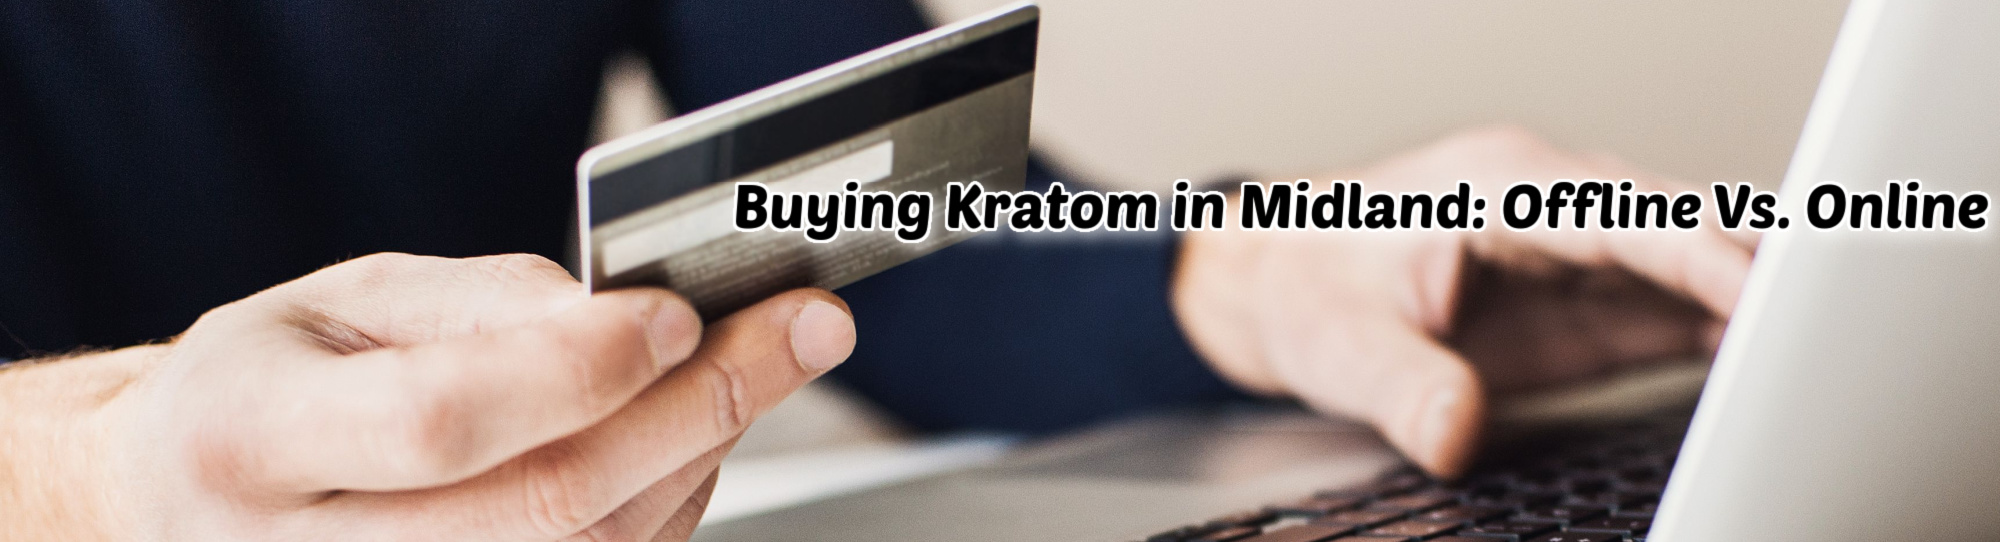 image of buying kratom in midland offline vs online